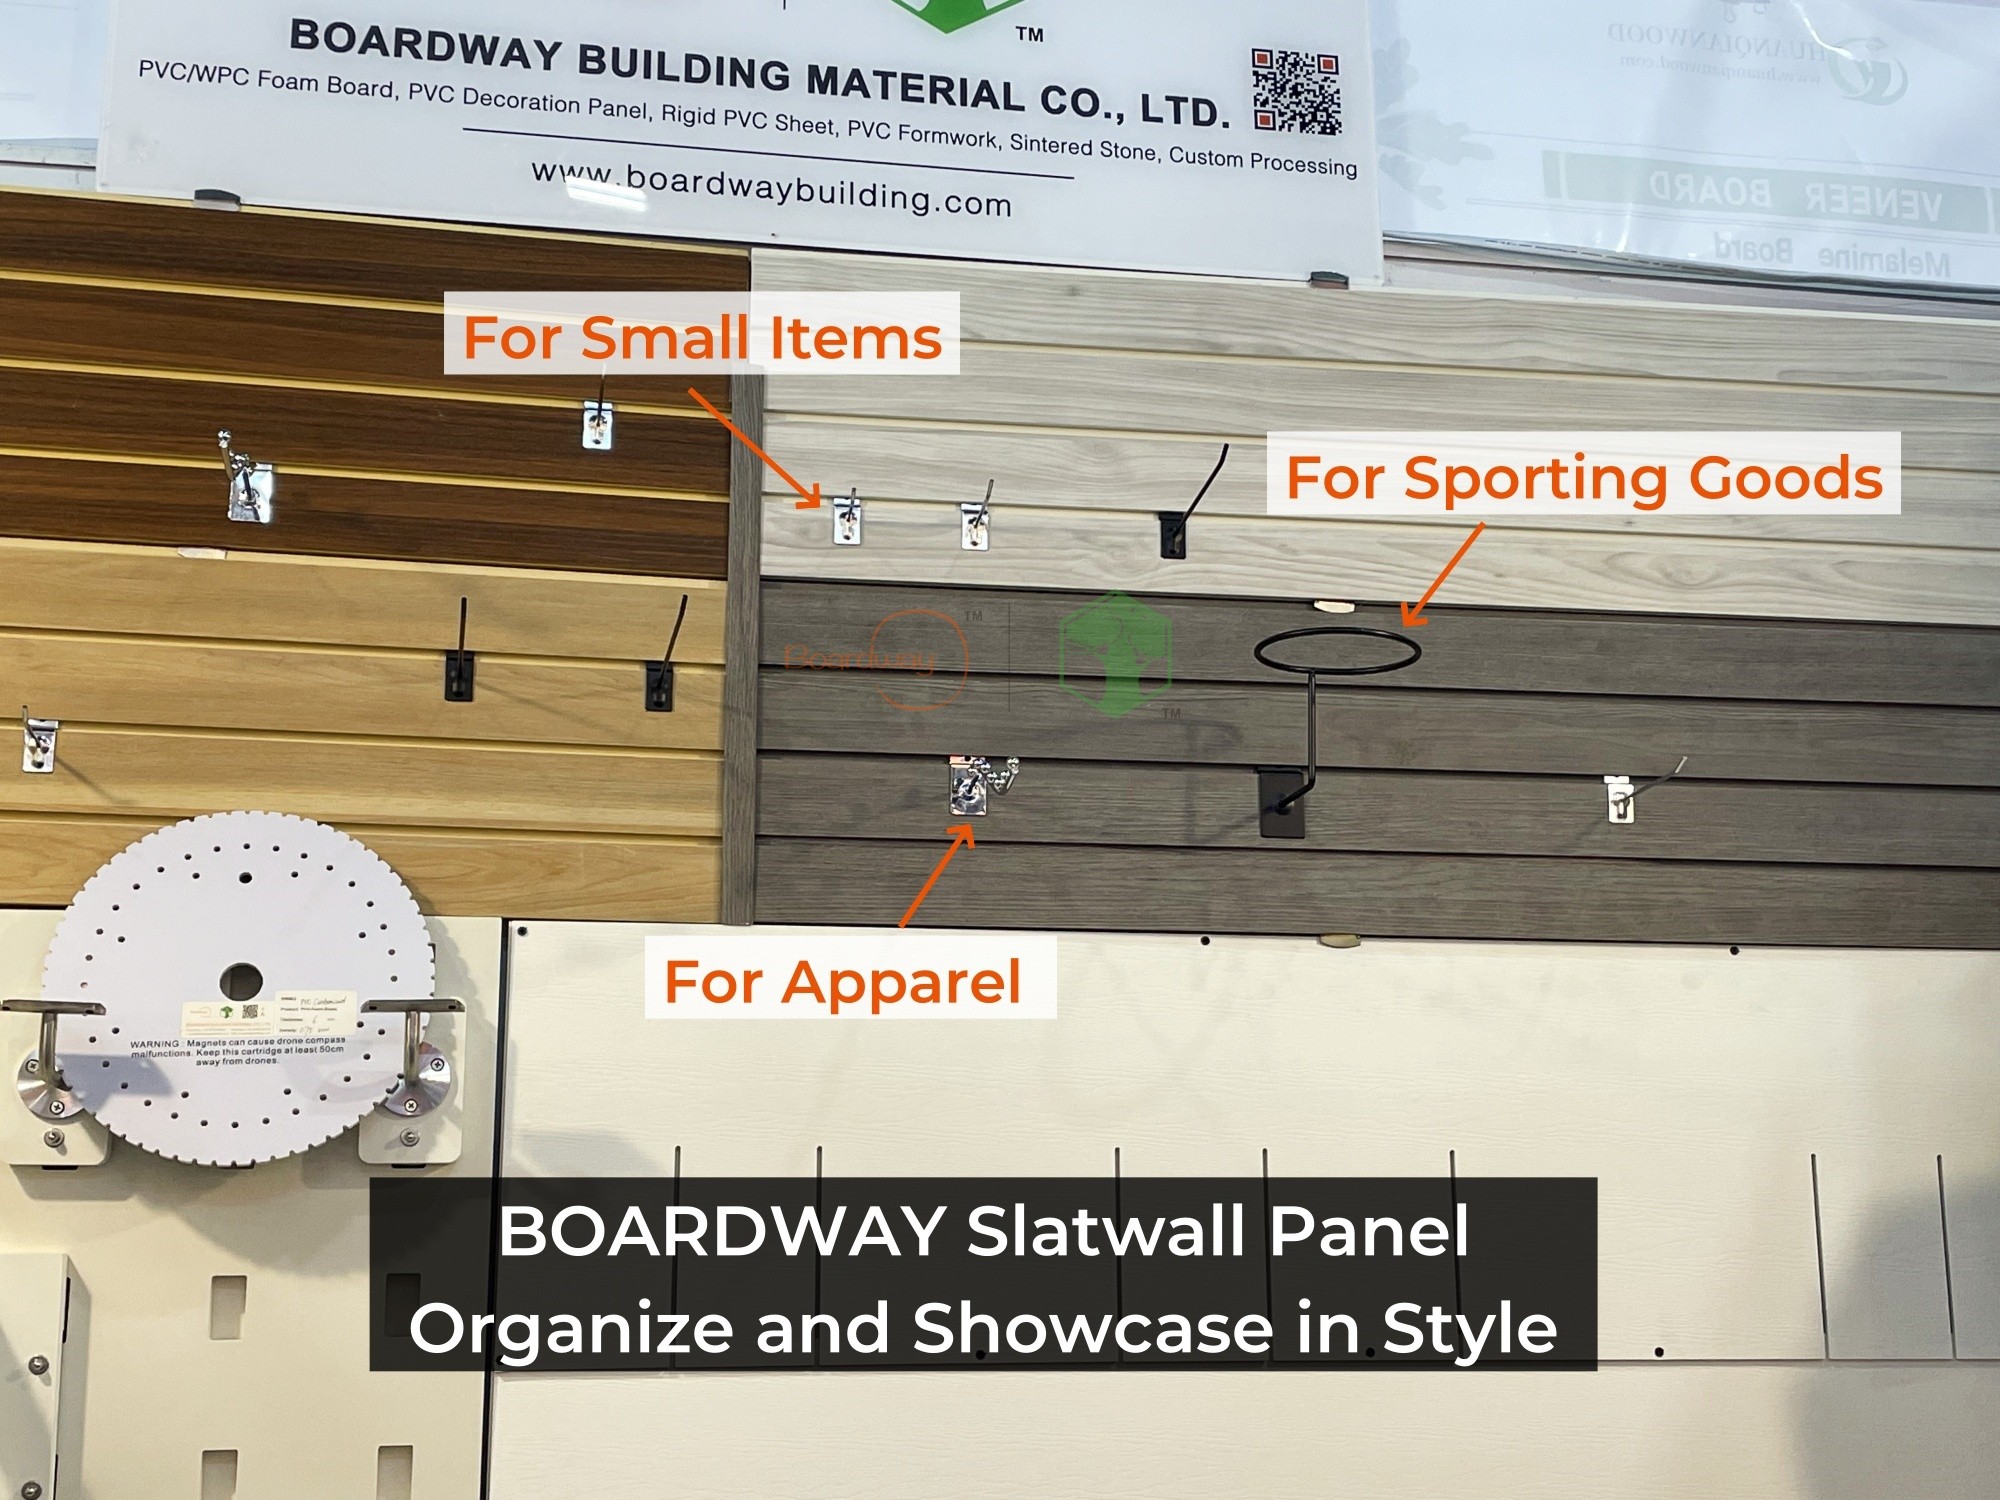 Boardway Slatwall Panel